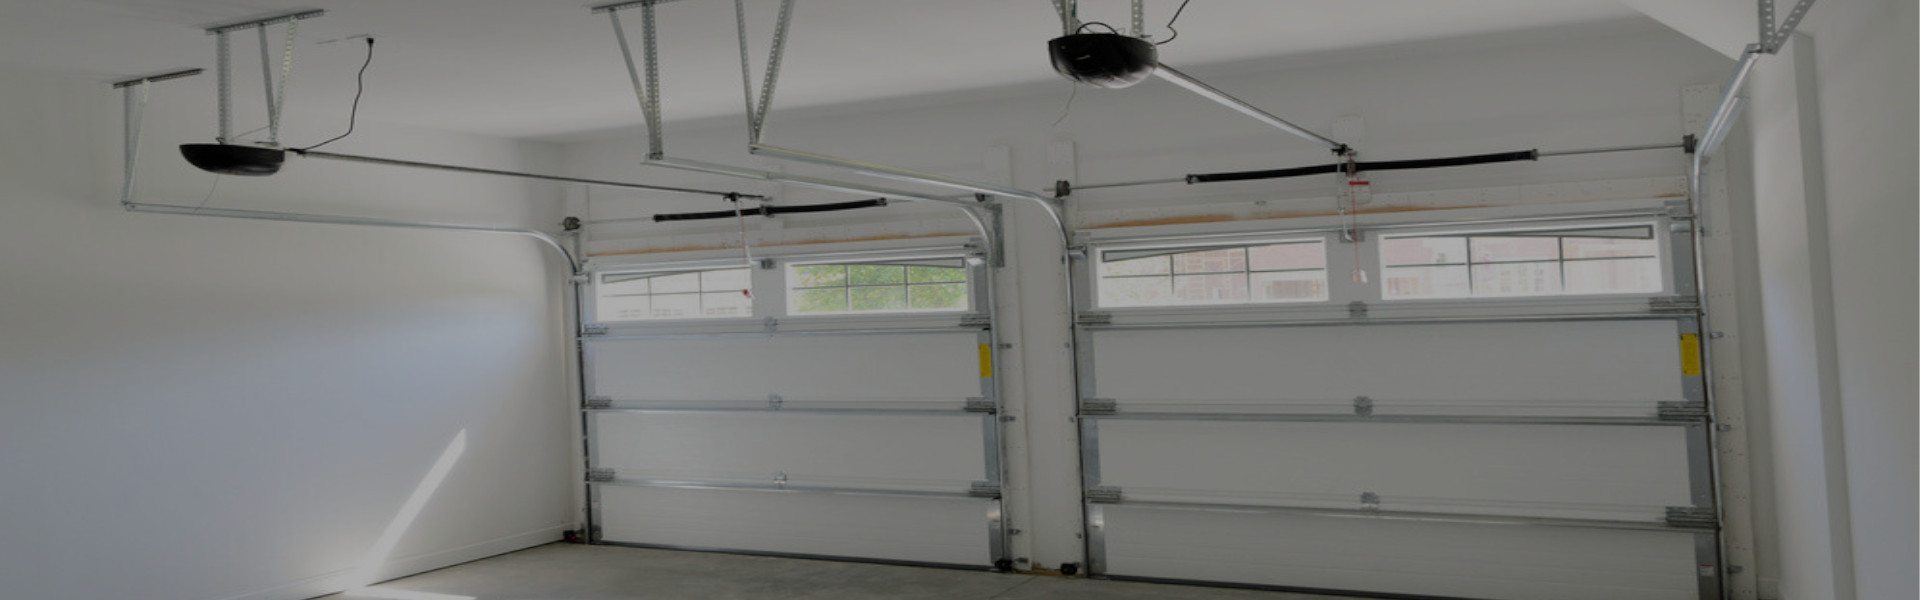 Slider Garage Door Repair, Glaziers in Southgate, N14